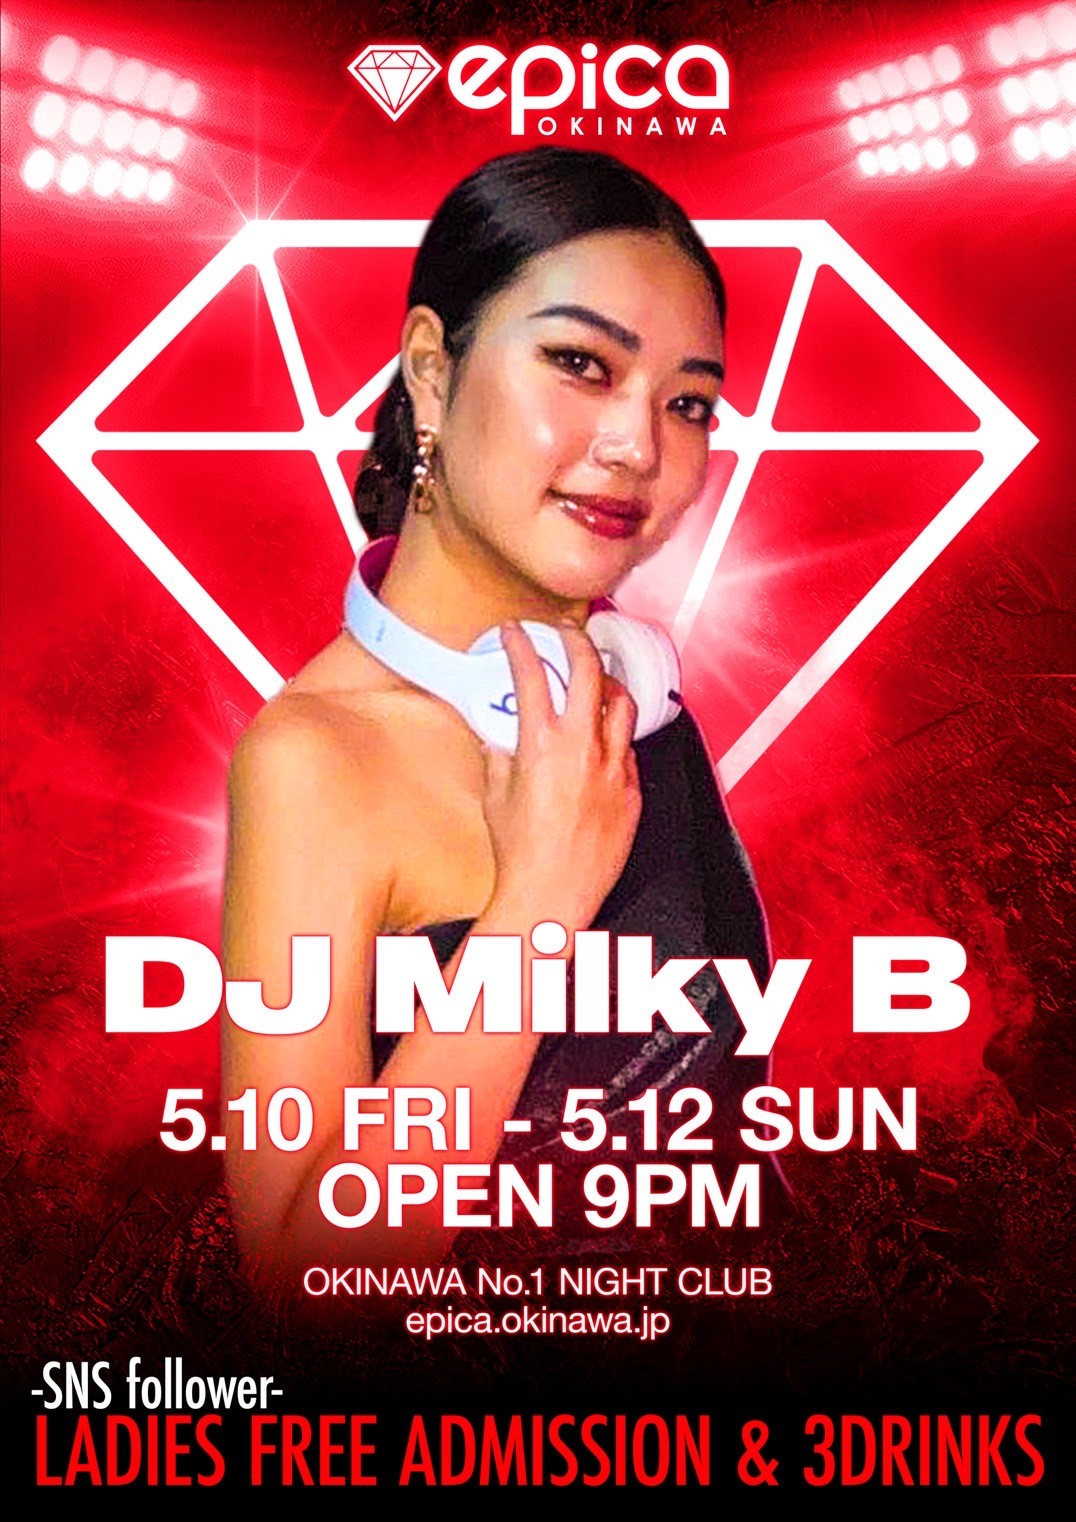 DJ Milky B